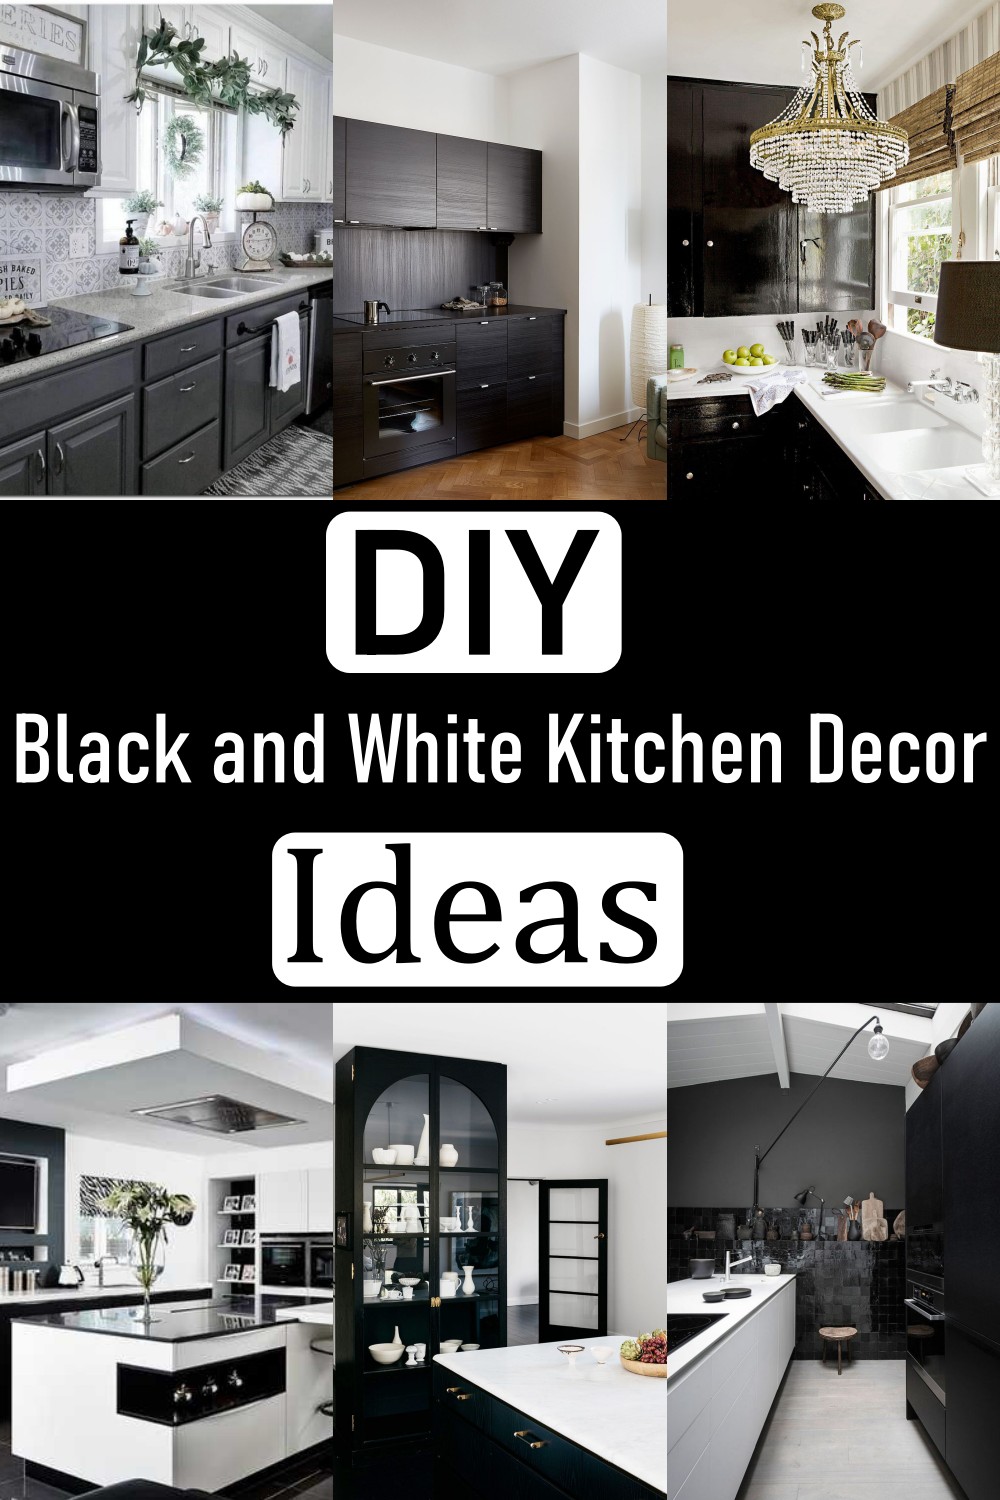 Black and White Kitchen Decor